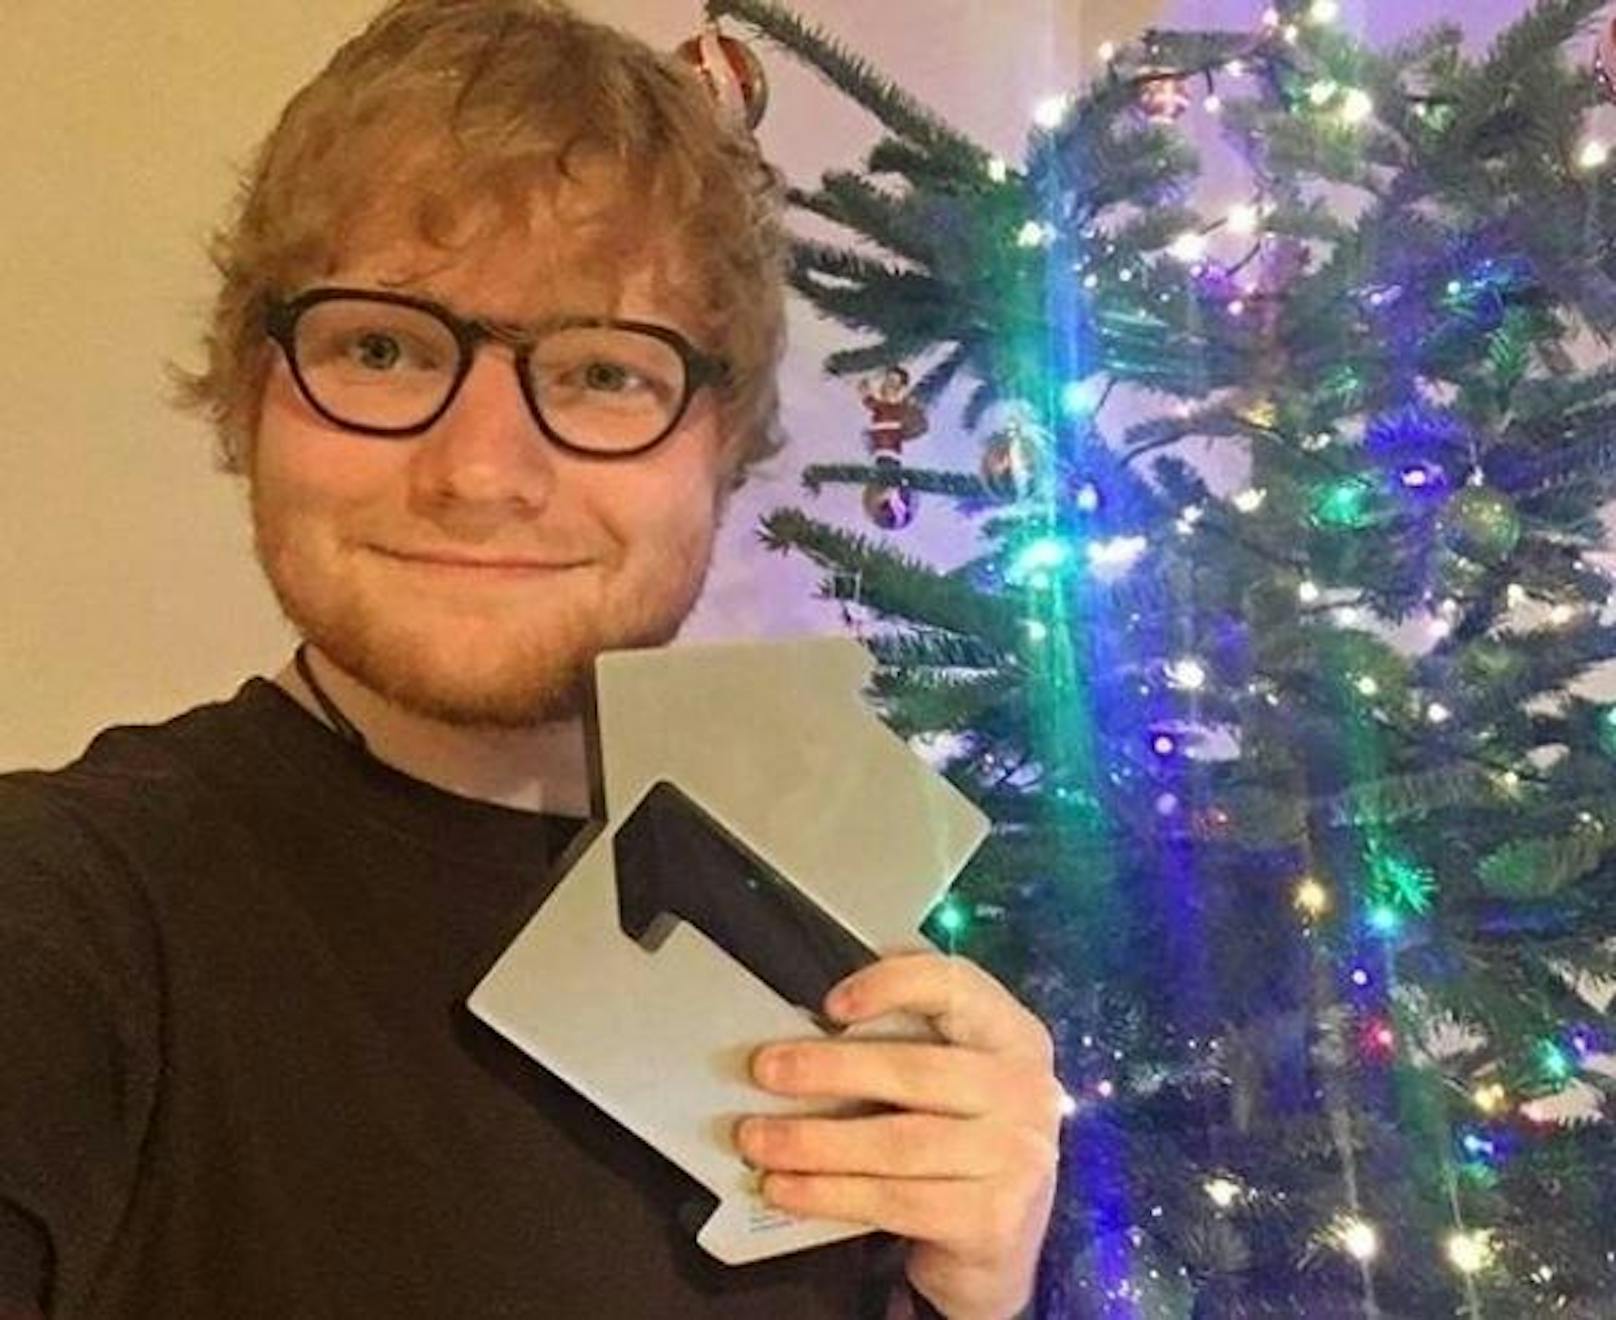 24.12.2017: Ed Sheeran wünscht seinen Fans mit diesem Foto frohe Weihnachten.